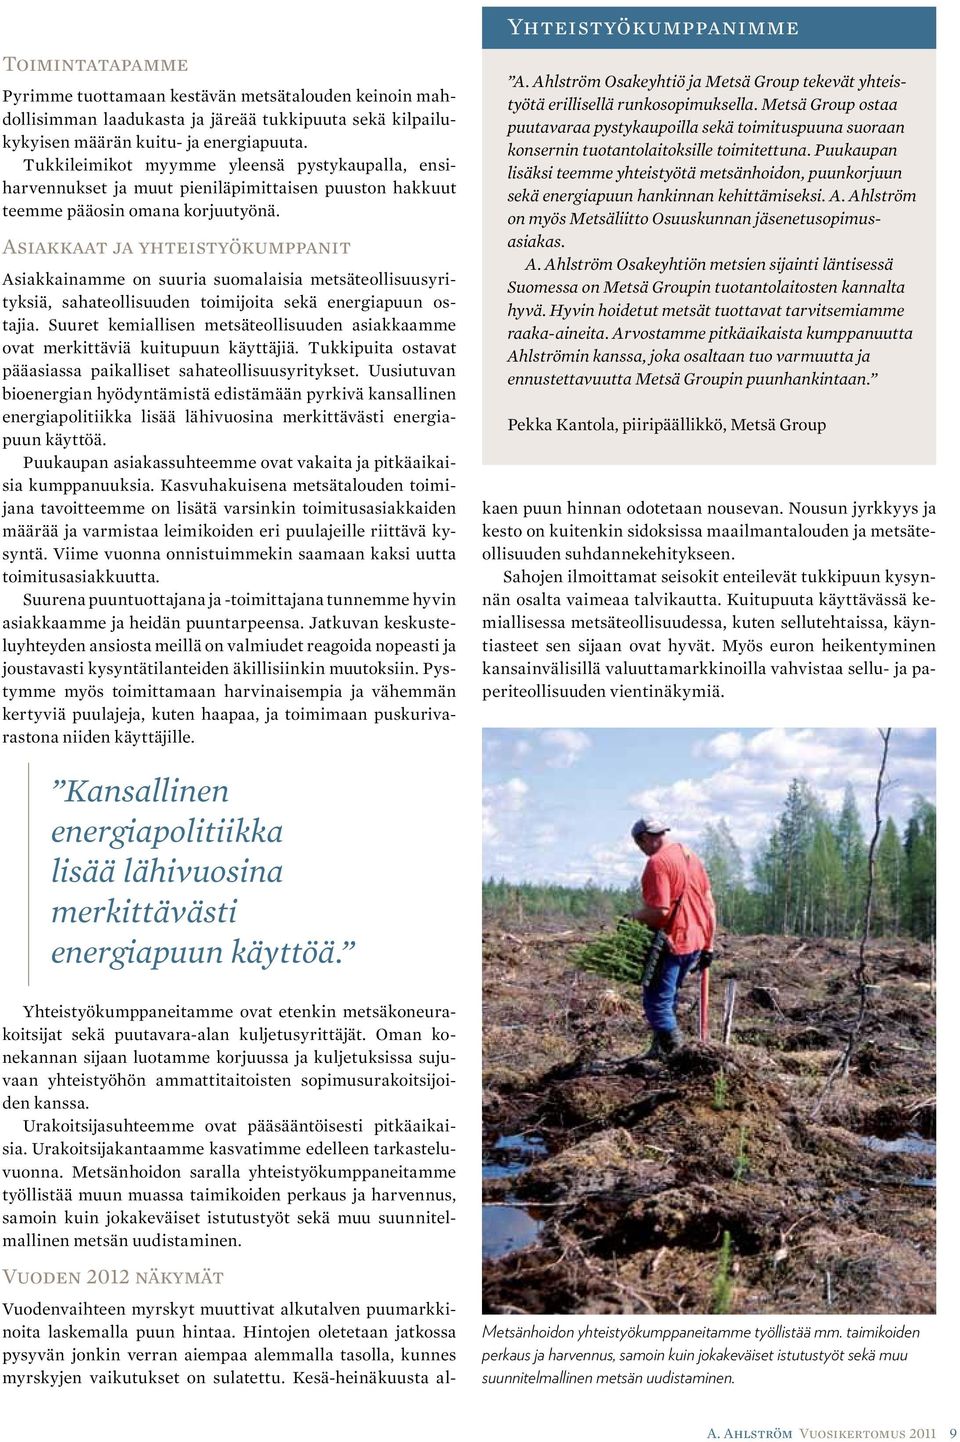 Asiakkaat ja yhteistyökumppanit Asiakkainamme on suuria suomalaisia metsäteollisuusyrityksiä, sahateollisuuden toimijoita sekä energiapuun ostajia.